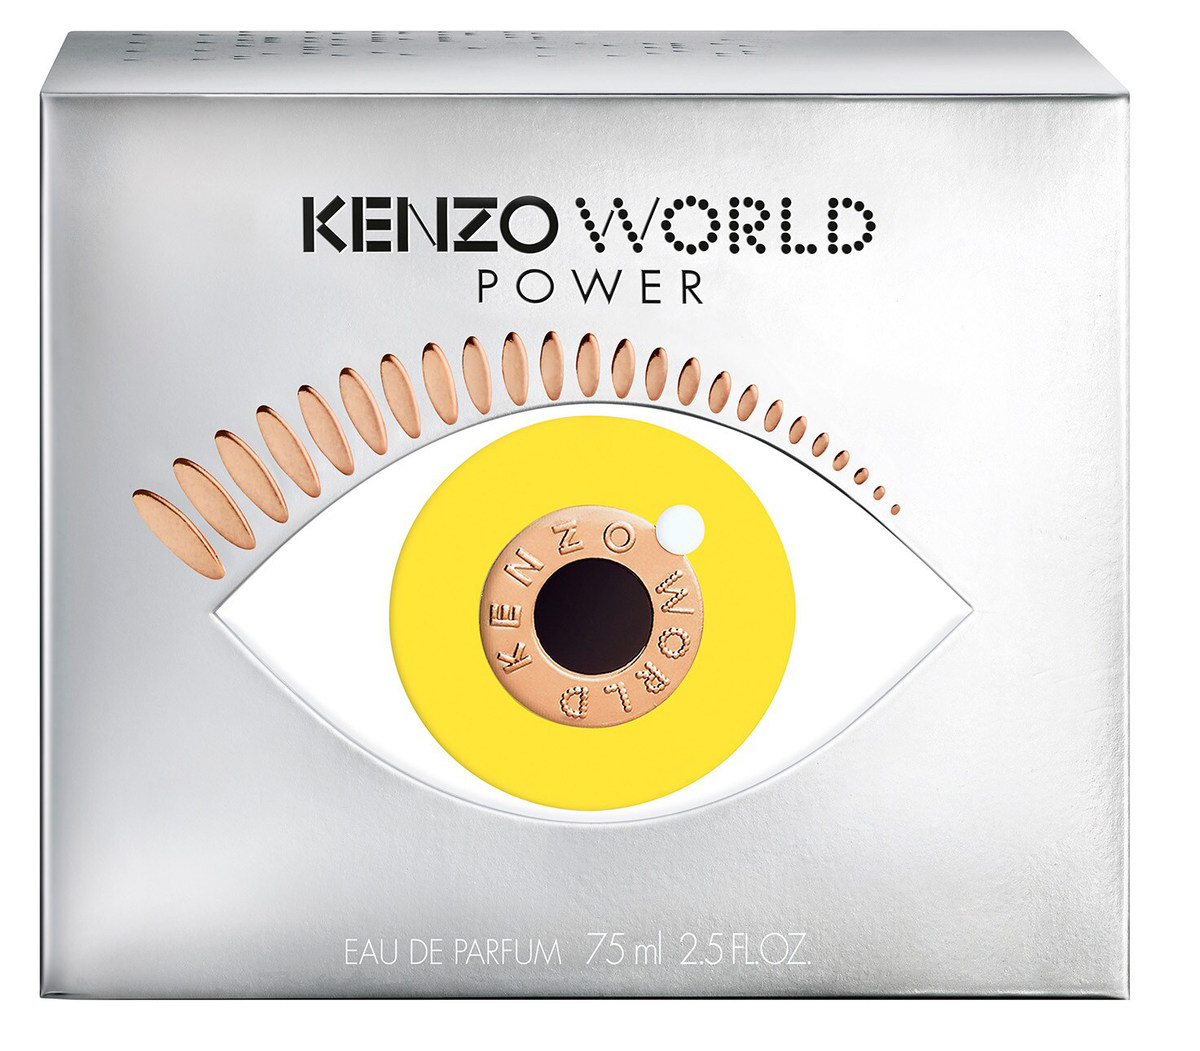 Kenzo - World Power Eau de Parfum (Eau de Parfum) » Reviews & Perfume Facts